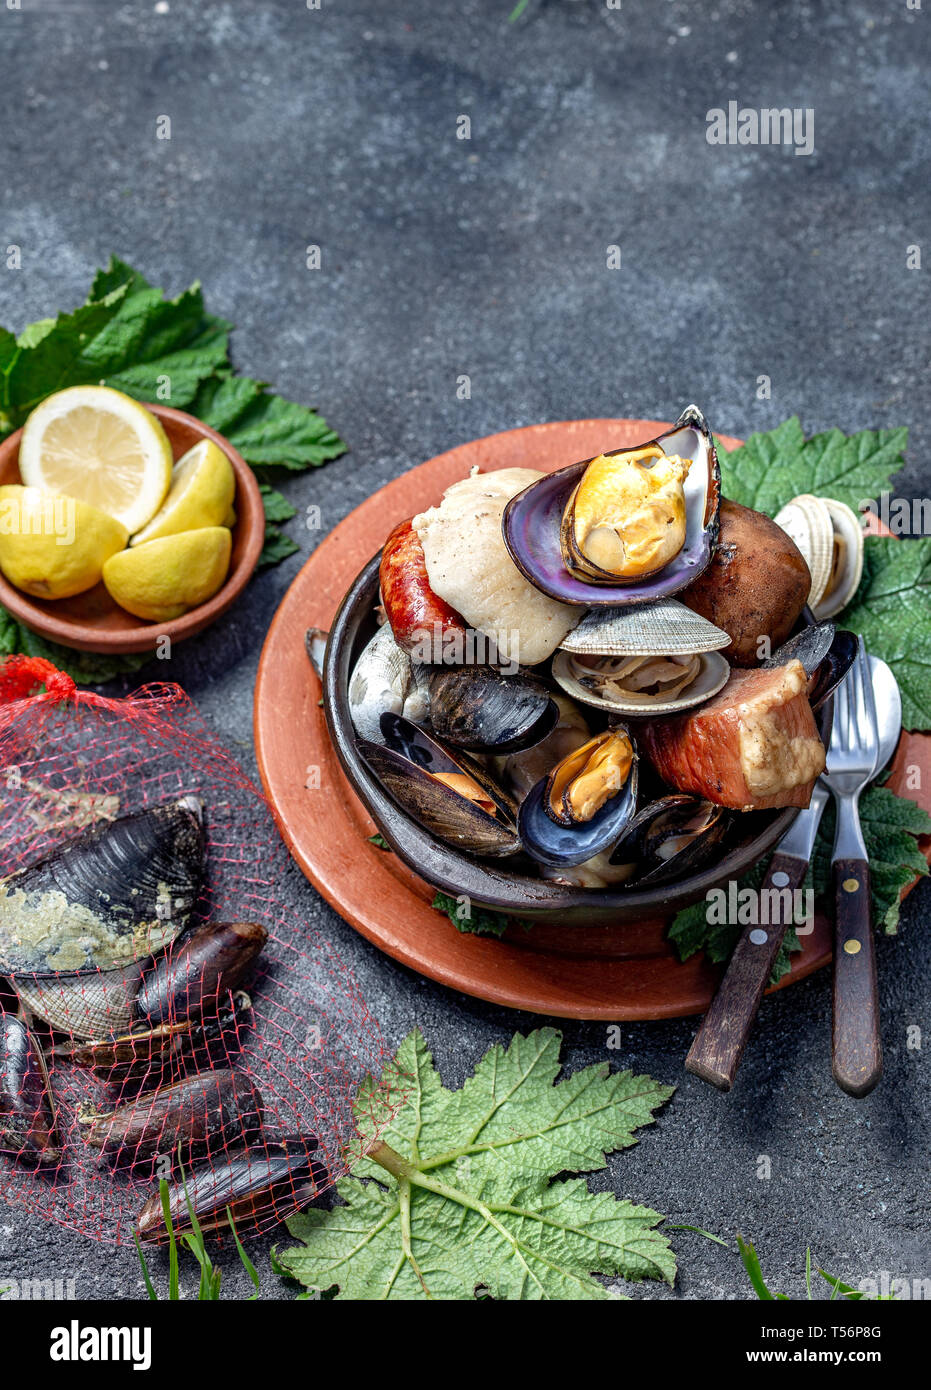 Berühmte traditionelle Gericht der Süden von Chile und der chiloe Archipel - Curanto al Hoyo, Kuranto. Verschiedene Meeresfrüchte, Fleisch und Kartoffeln milcao Stockfoto